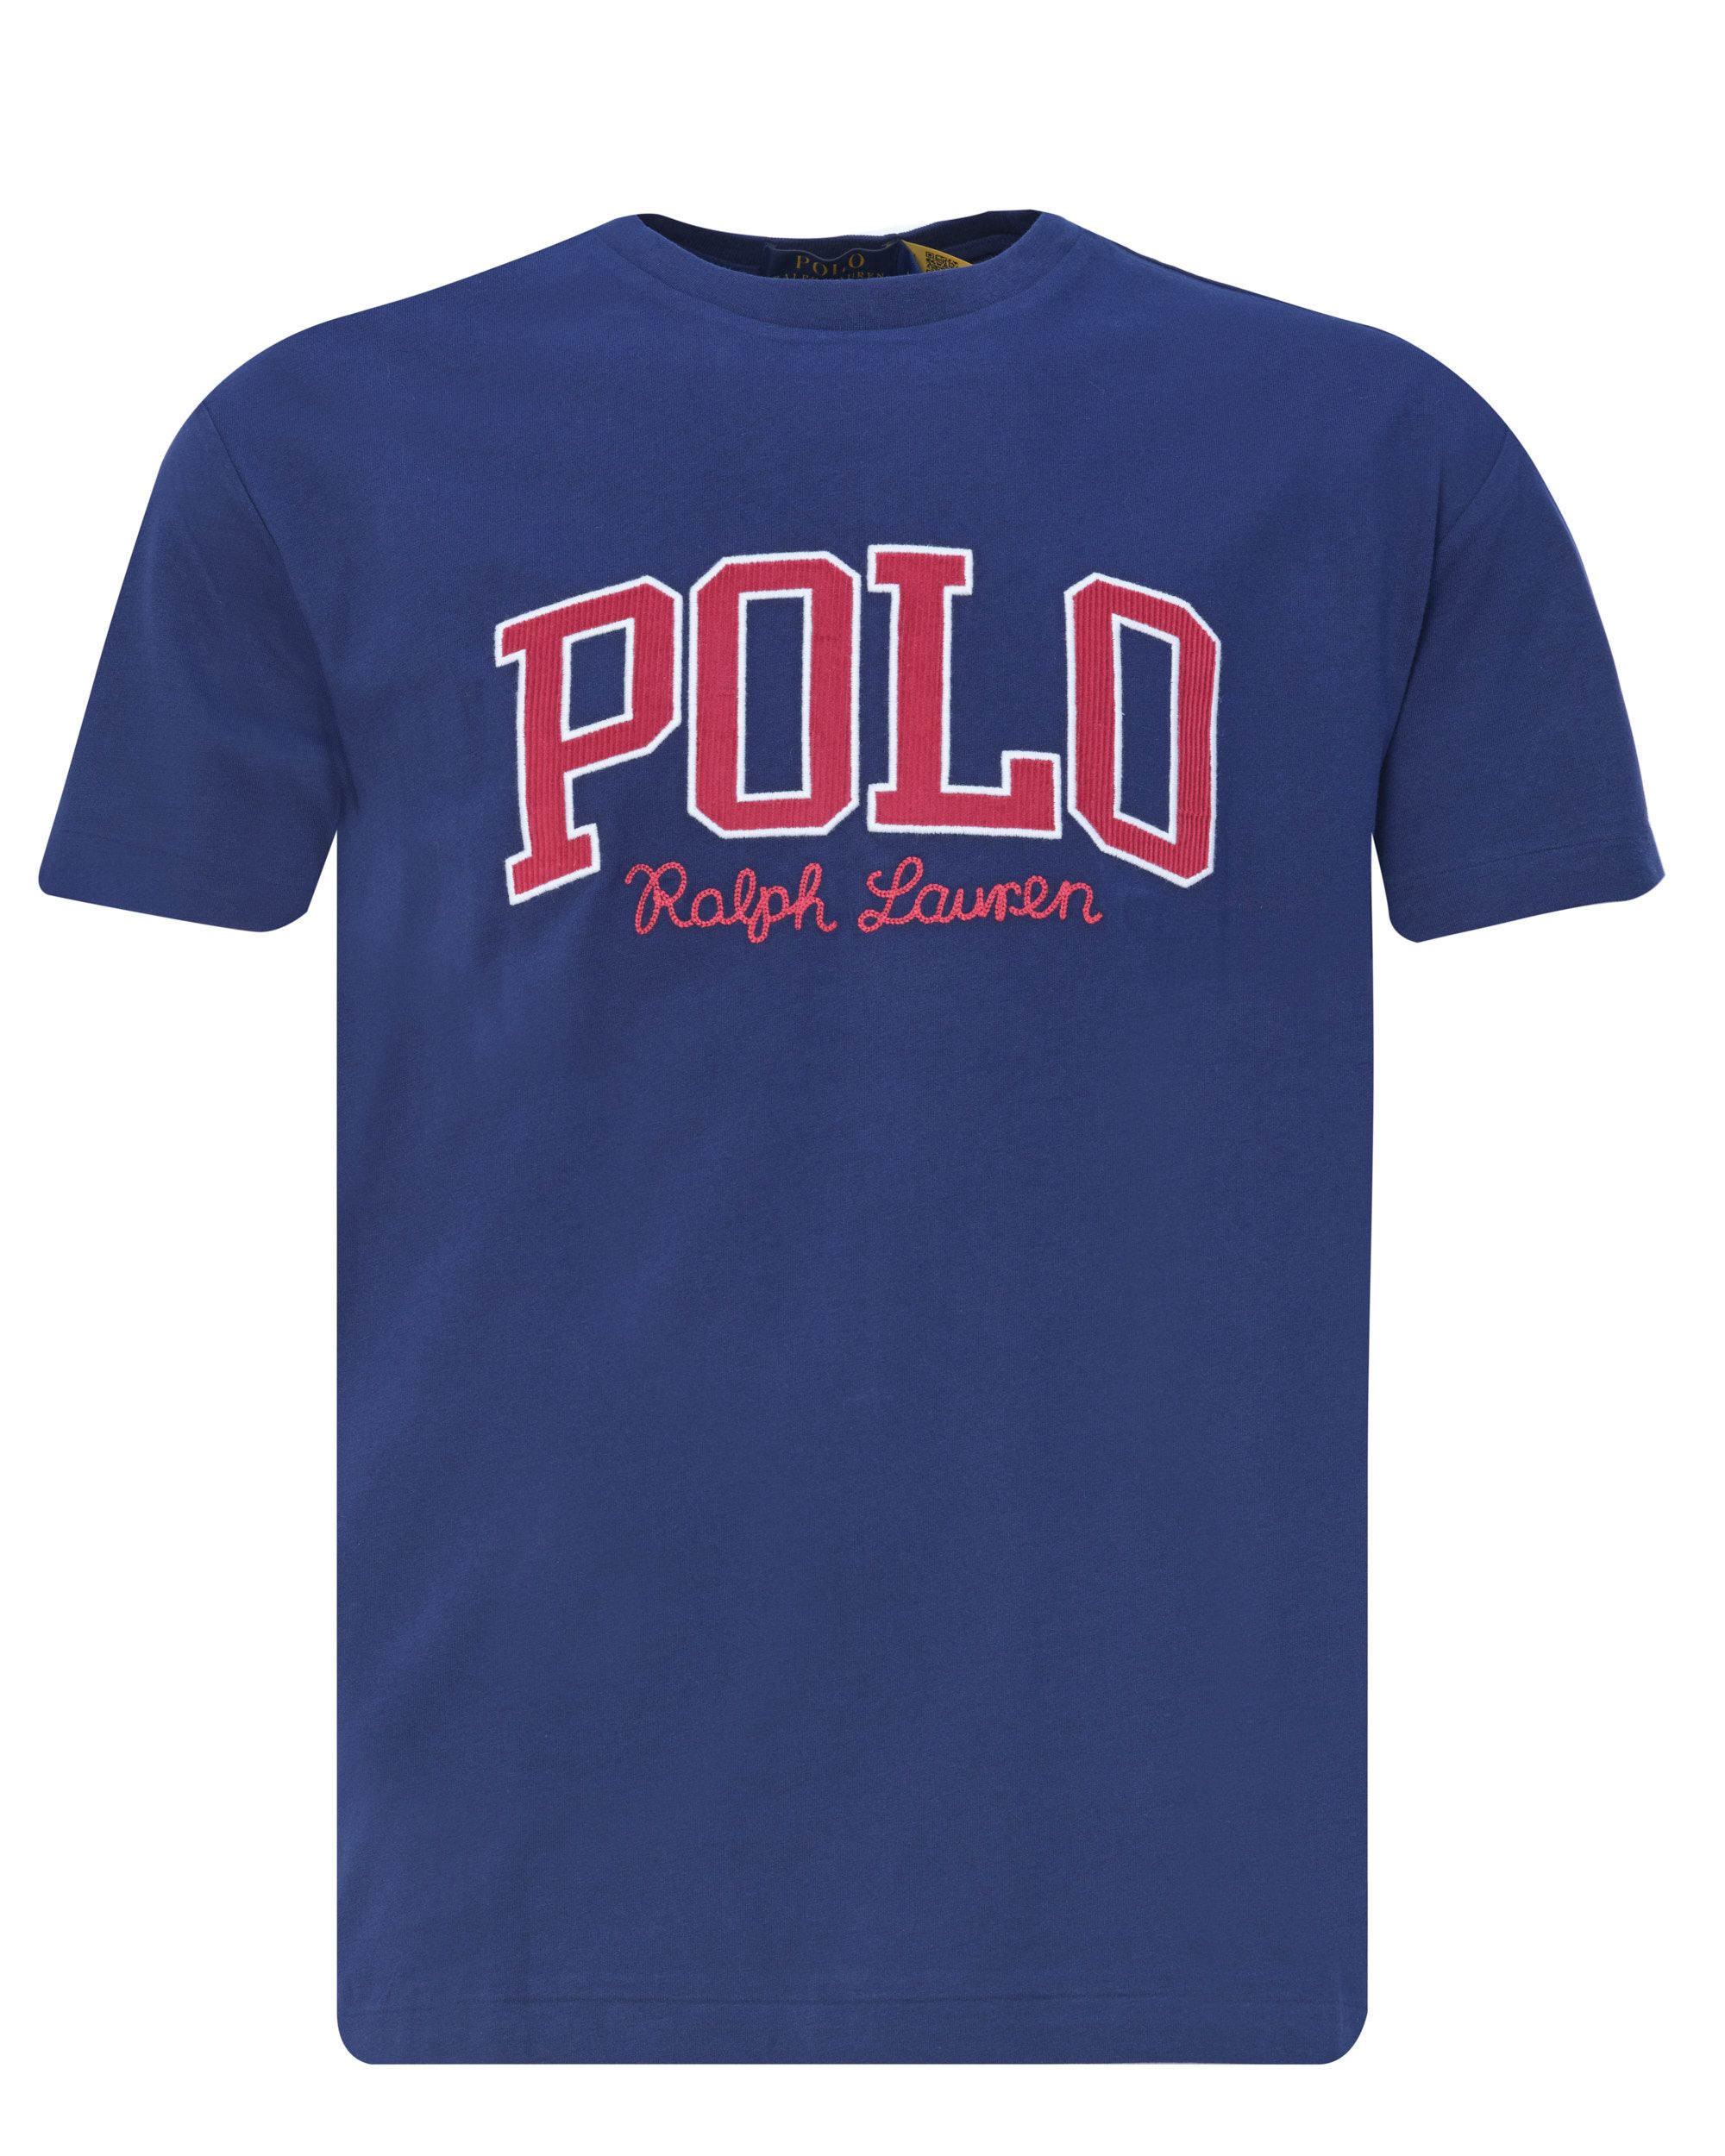 Polo Ralph Lauren T-shirt KM Donker blauw 080618-001-L